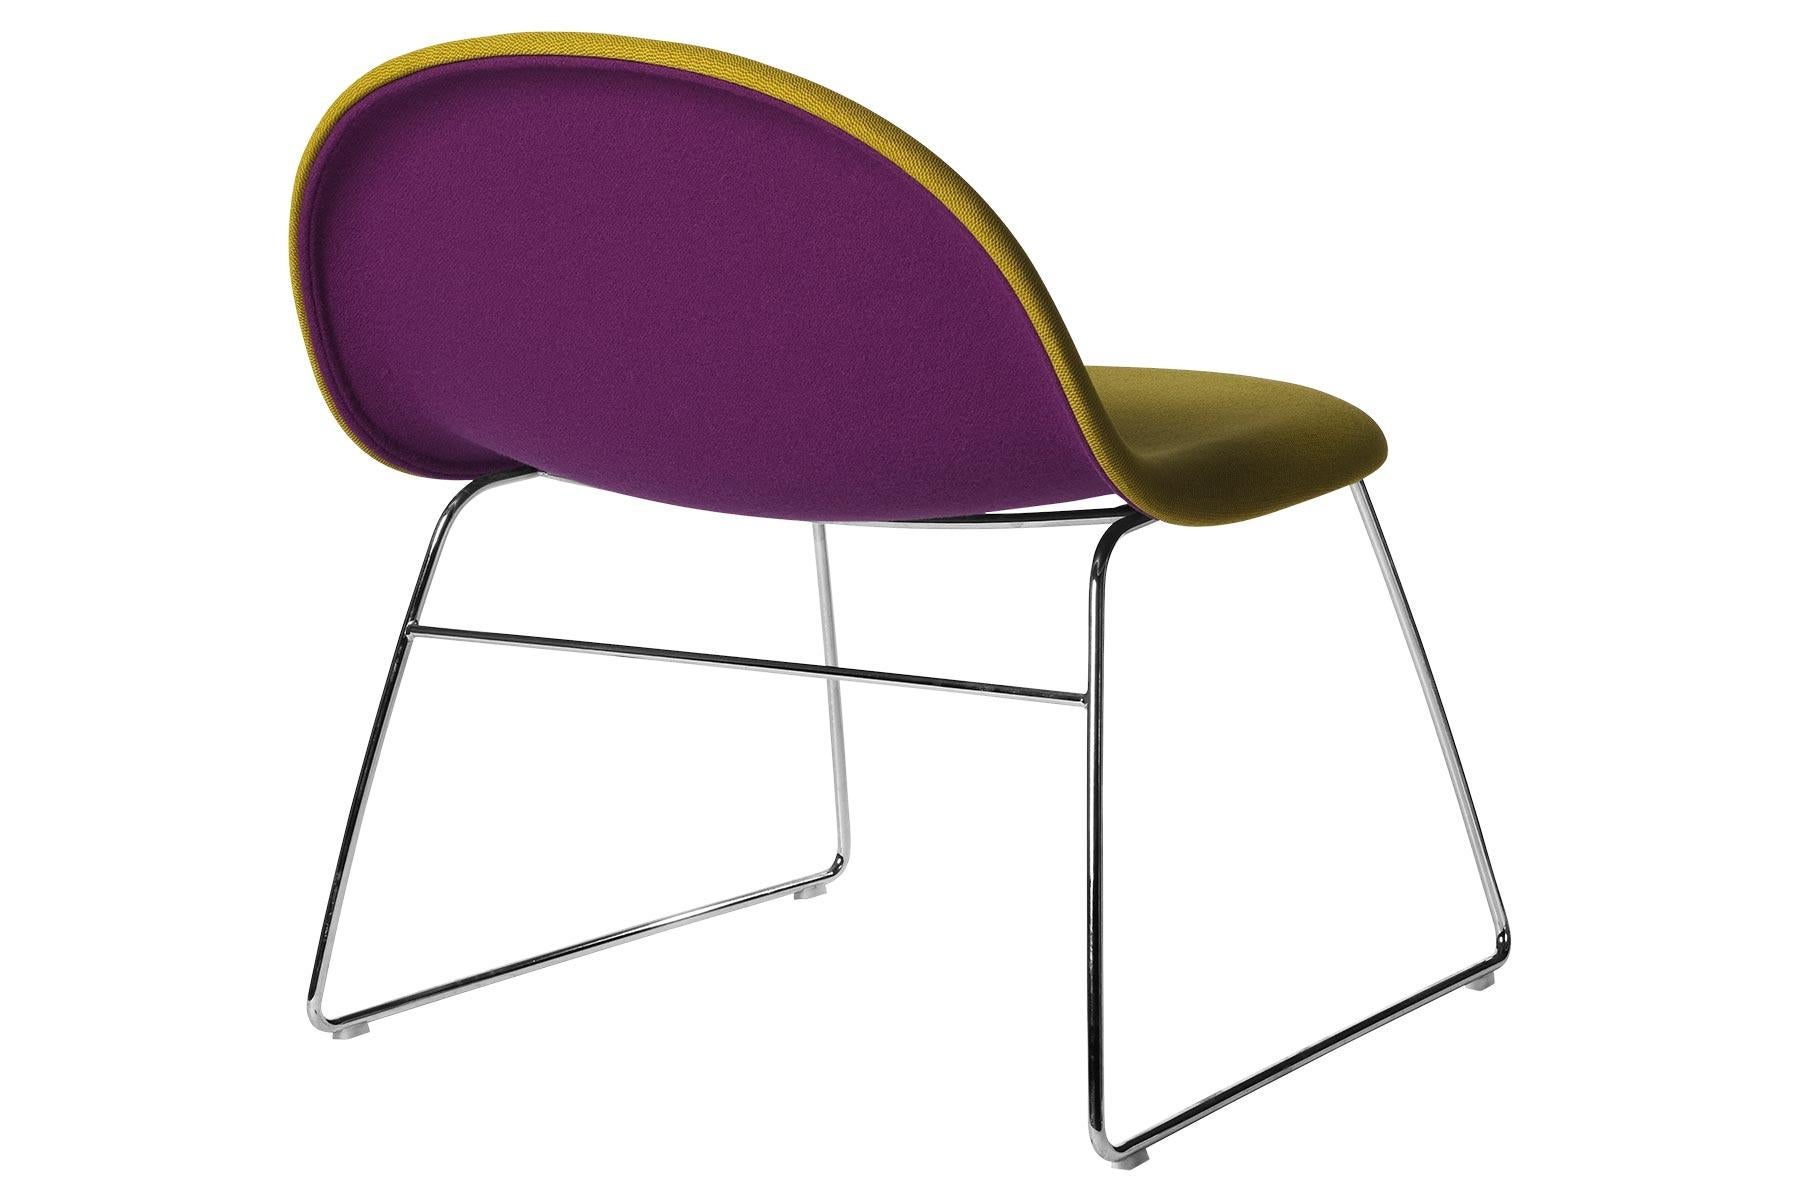 L'un des produits les plus innovants de Gubi, la chaise longue Gubi, est conçu par Boris Berlin et Poul Christiansen de Komplot design. La chaise longue Gubi est une évolution de la chaise Gubi, qui a été le premier meuble conçu à partir de la